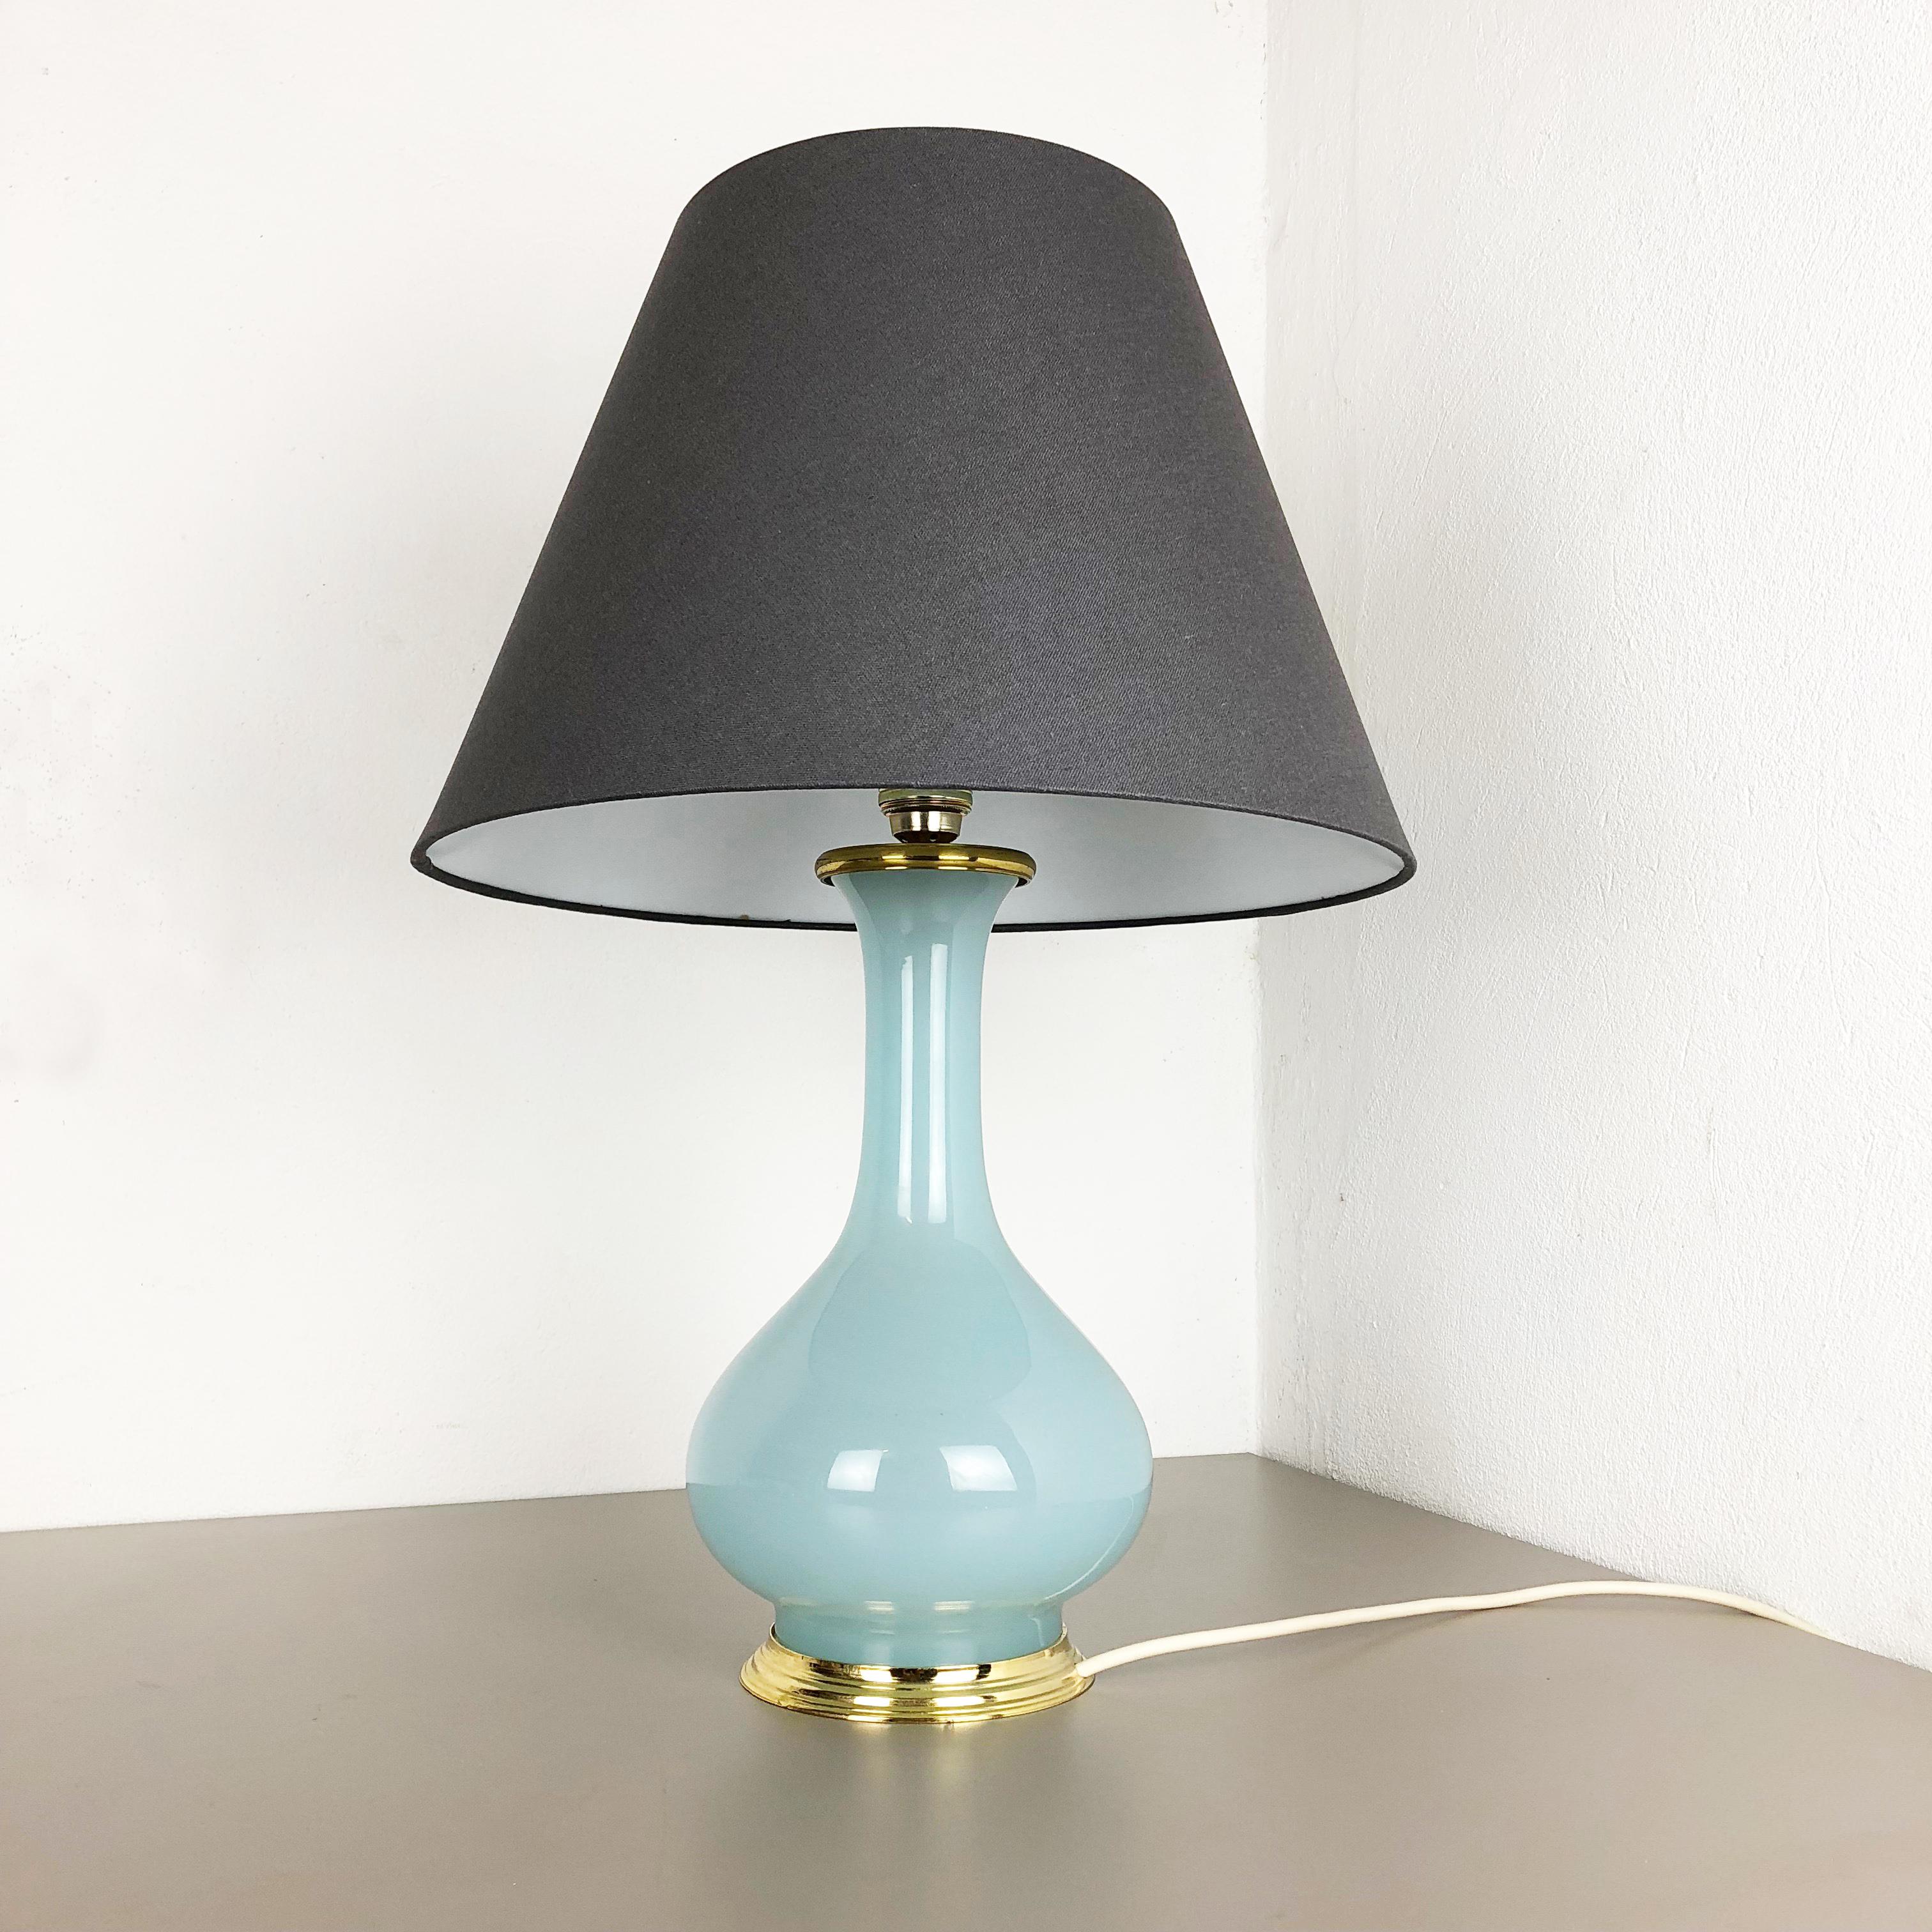 Article :

lampe de table verre opale de Murano



Producteur : 

Cenedese Vetri


Origine : 

Murano, Italie


Âge : 

1960s



Description : 

Cette fantastique lampe de table vintage a été conçue et produite par Cenedese